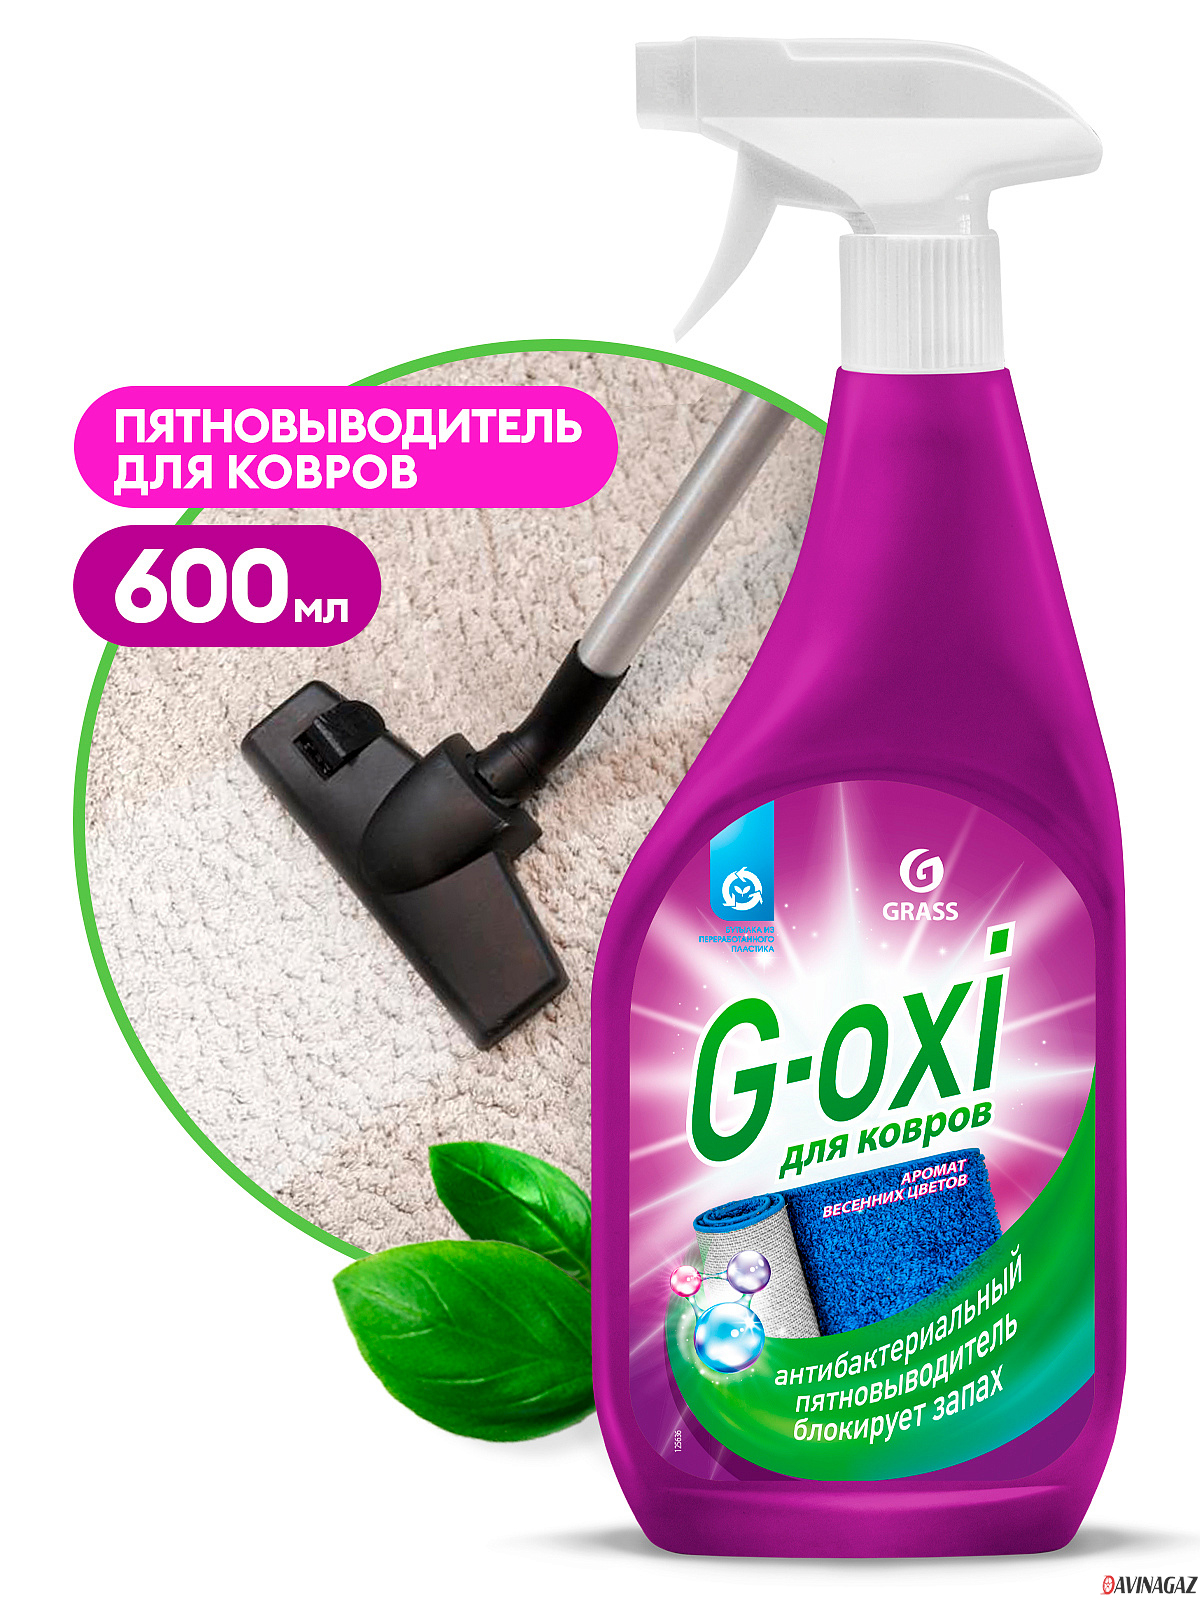 GRASS - Спрей пятновыводитель для ковров и ковровых покрытий с антибактериальным эффектом G-oxi, 600мл / 125636